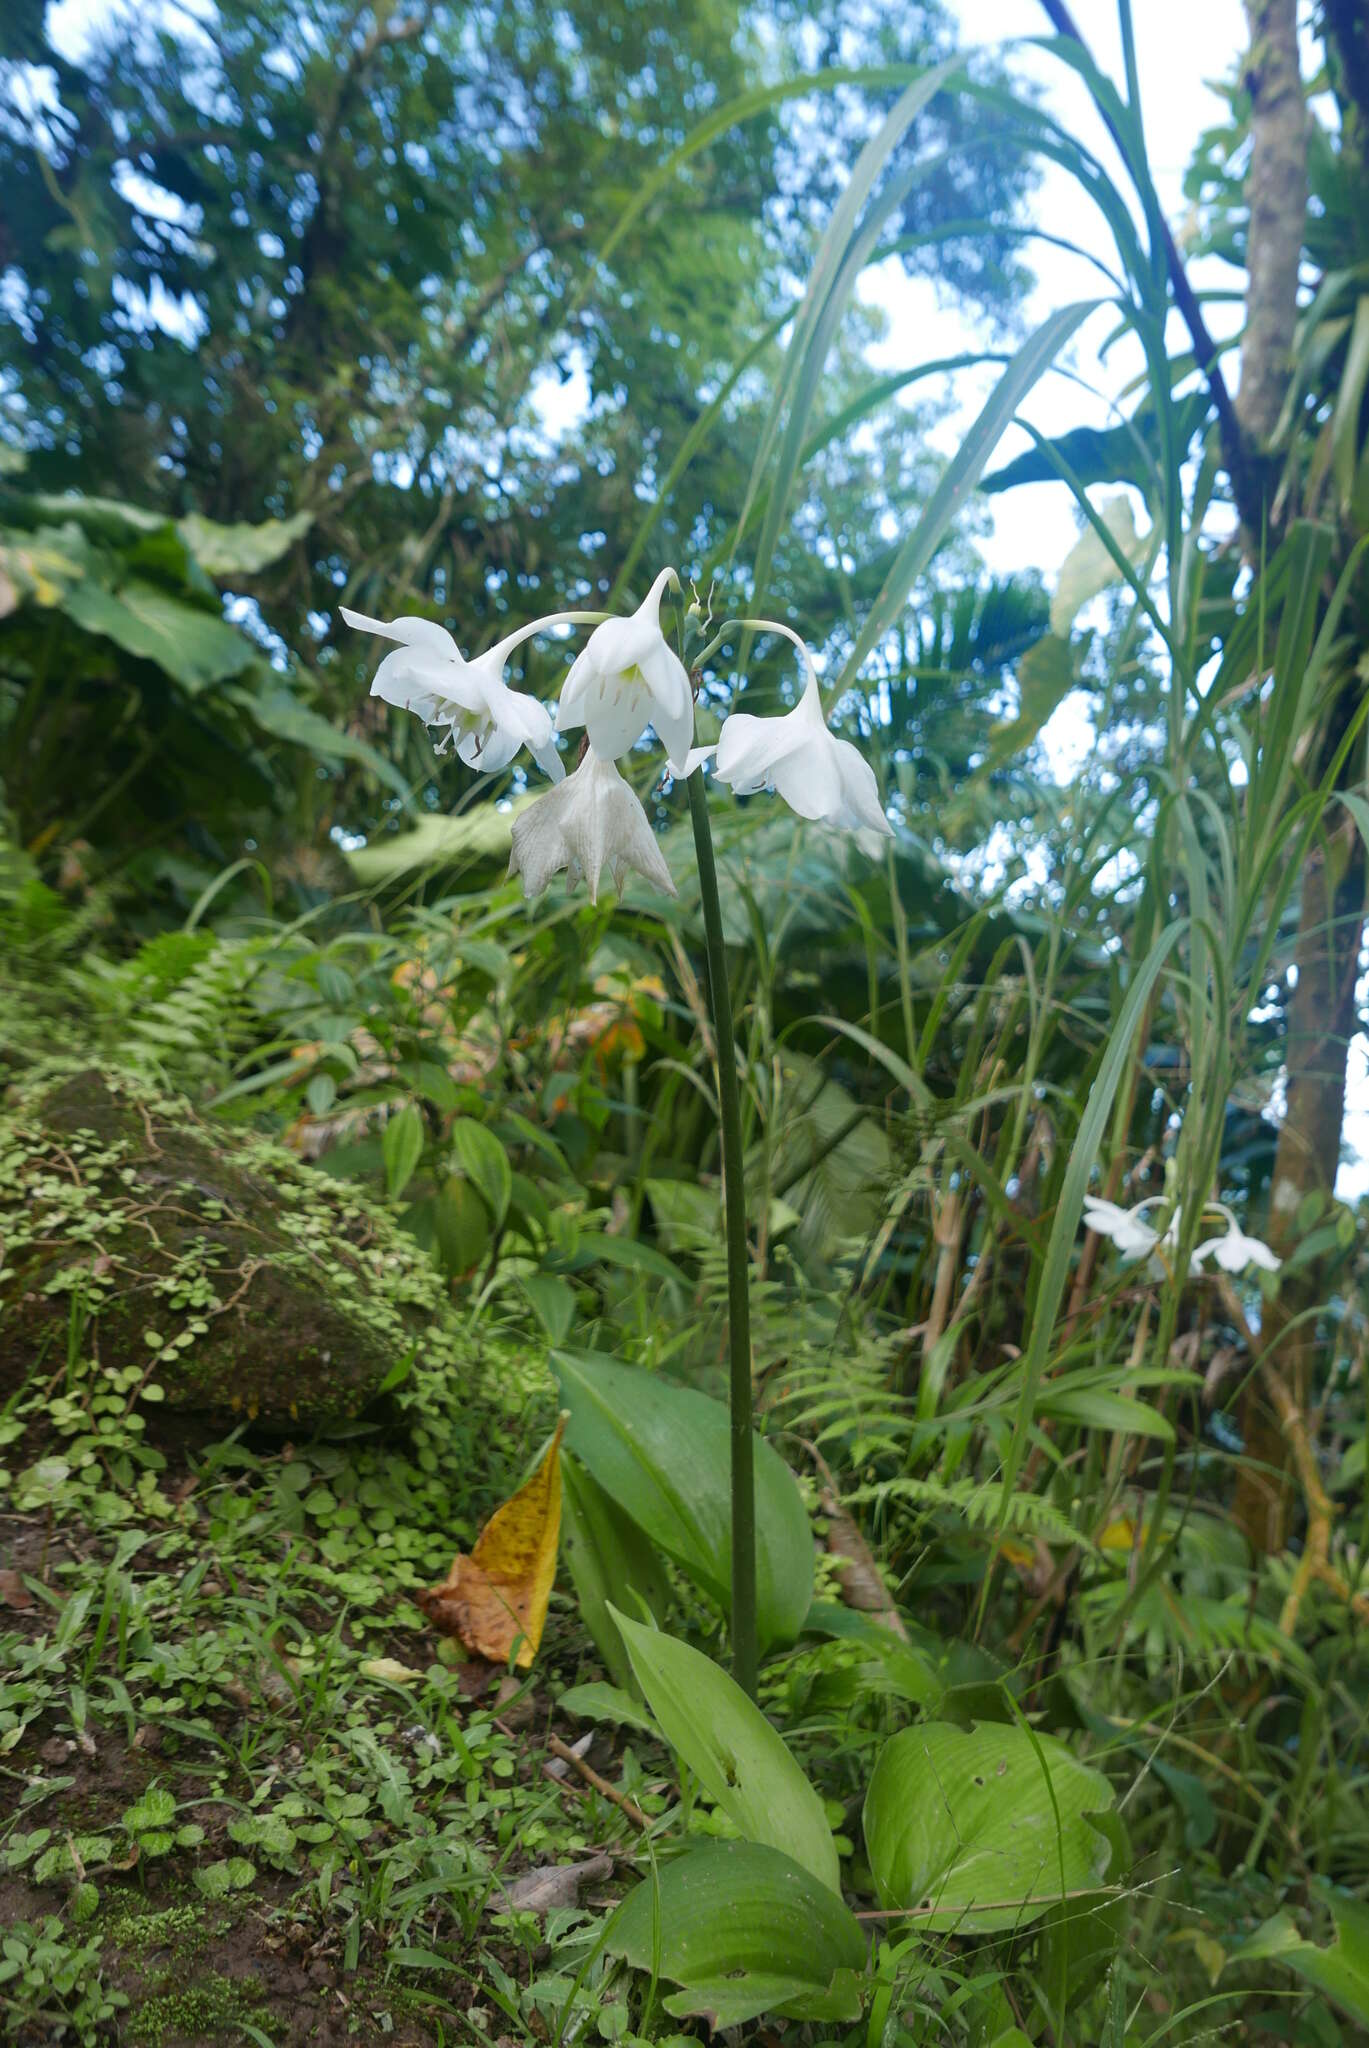 Image of Urceolina amazonica